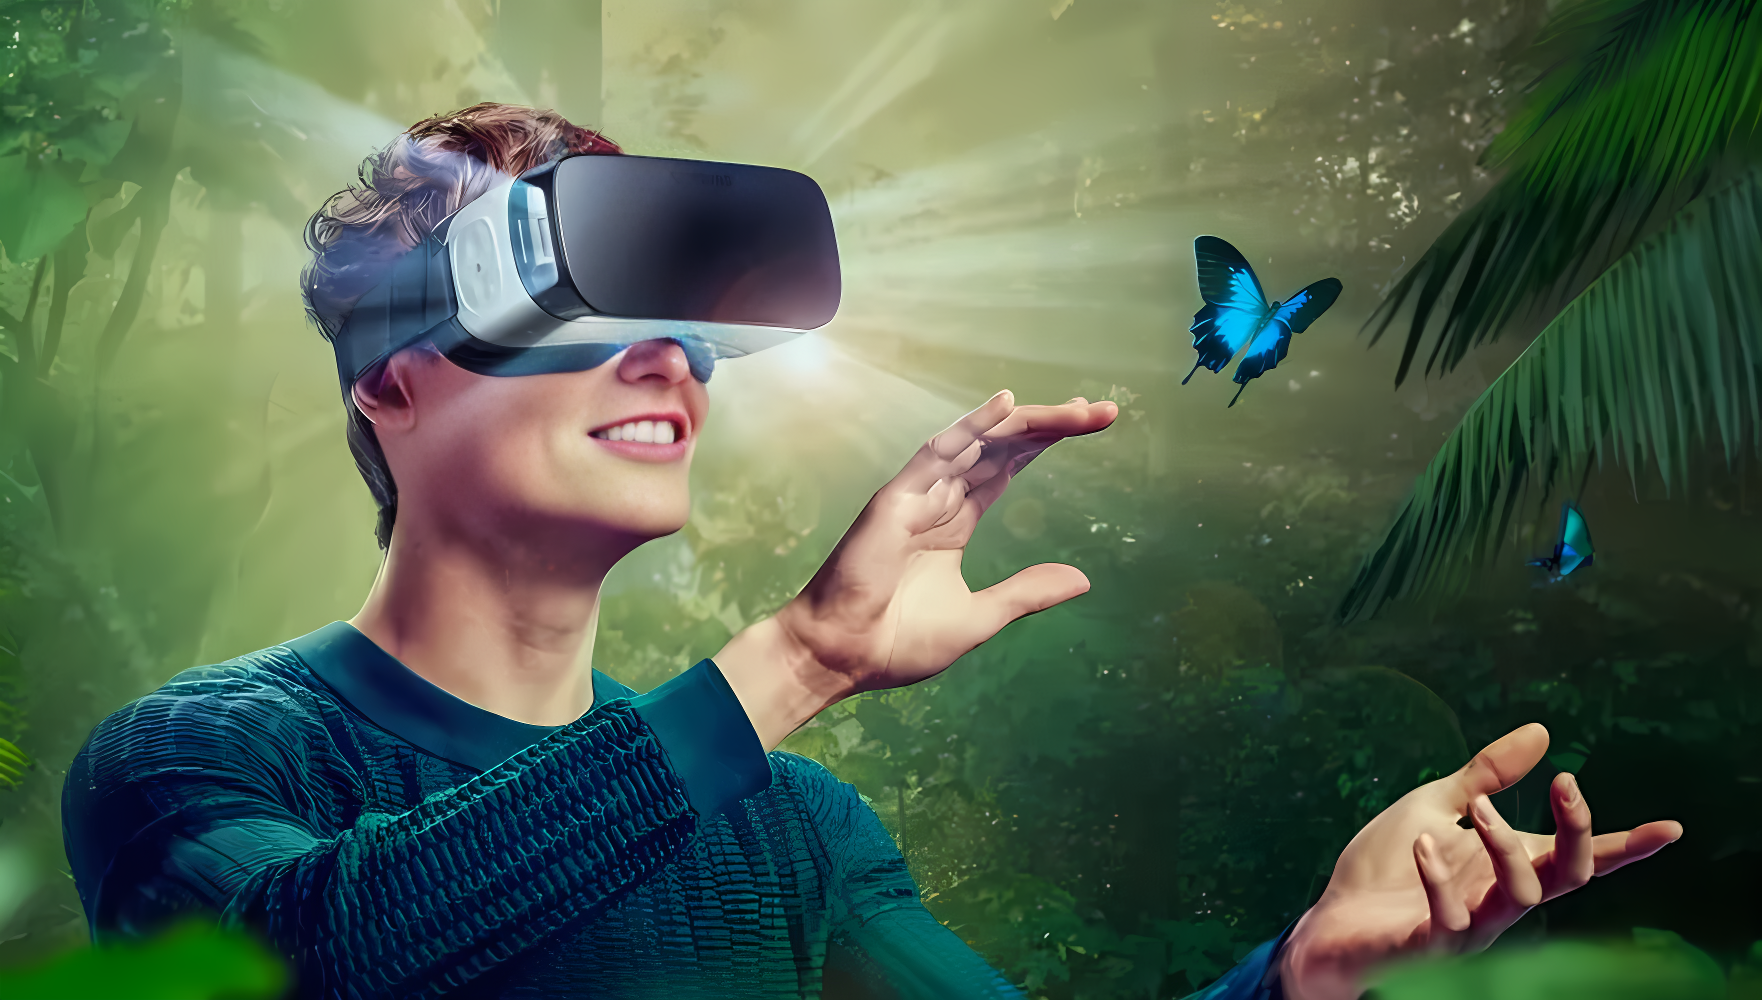 图片展示一位佩戴虚拟现实头盔的人，似乎在体验一个热带森林环境，对着飞舞的蝴蝶伸出手指，面露微笑，沉浸其中。